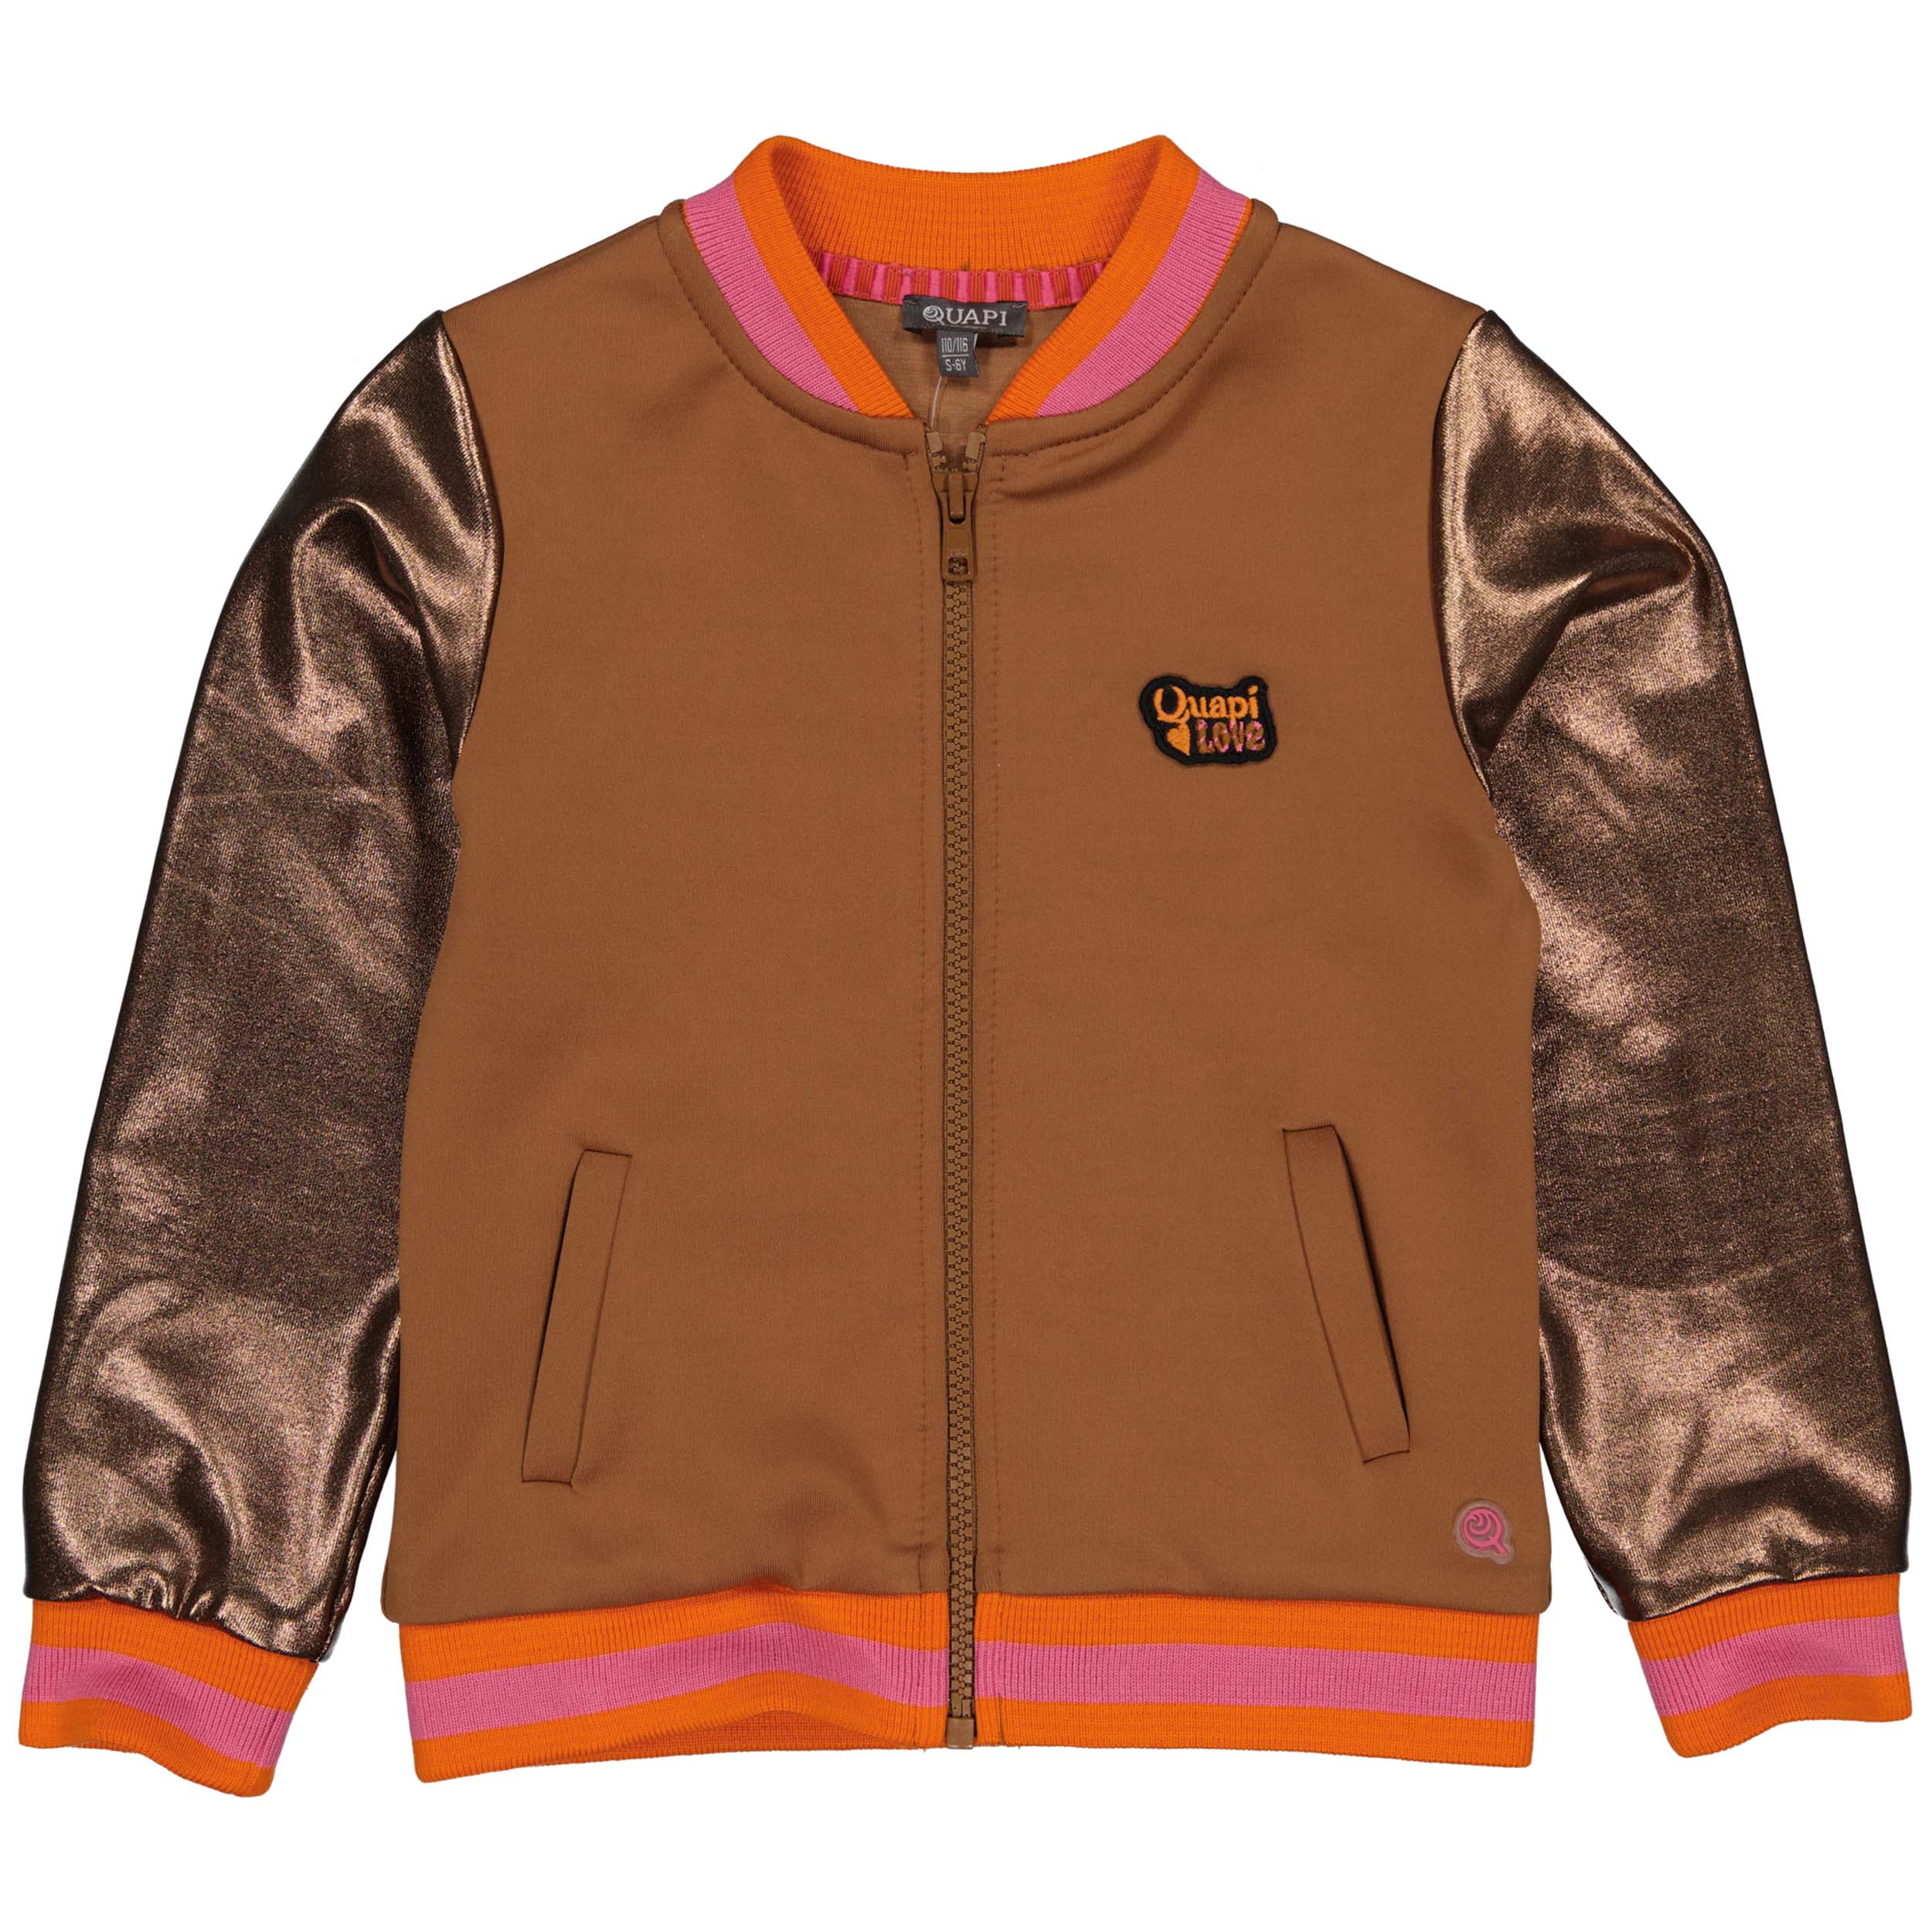 Meisjes Jacket RICKYW221 van Quapi in de kleur Brown Fudge in maat 98-104.